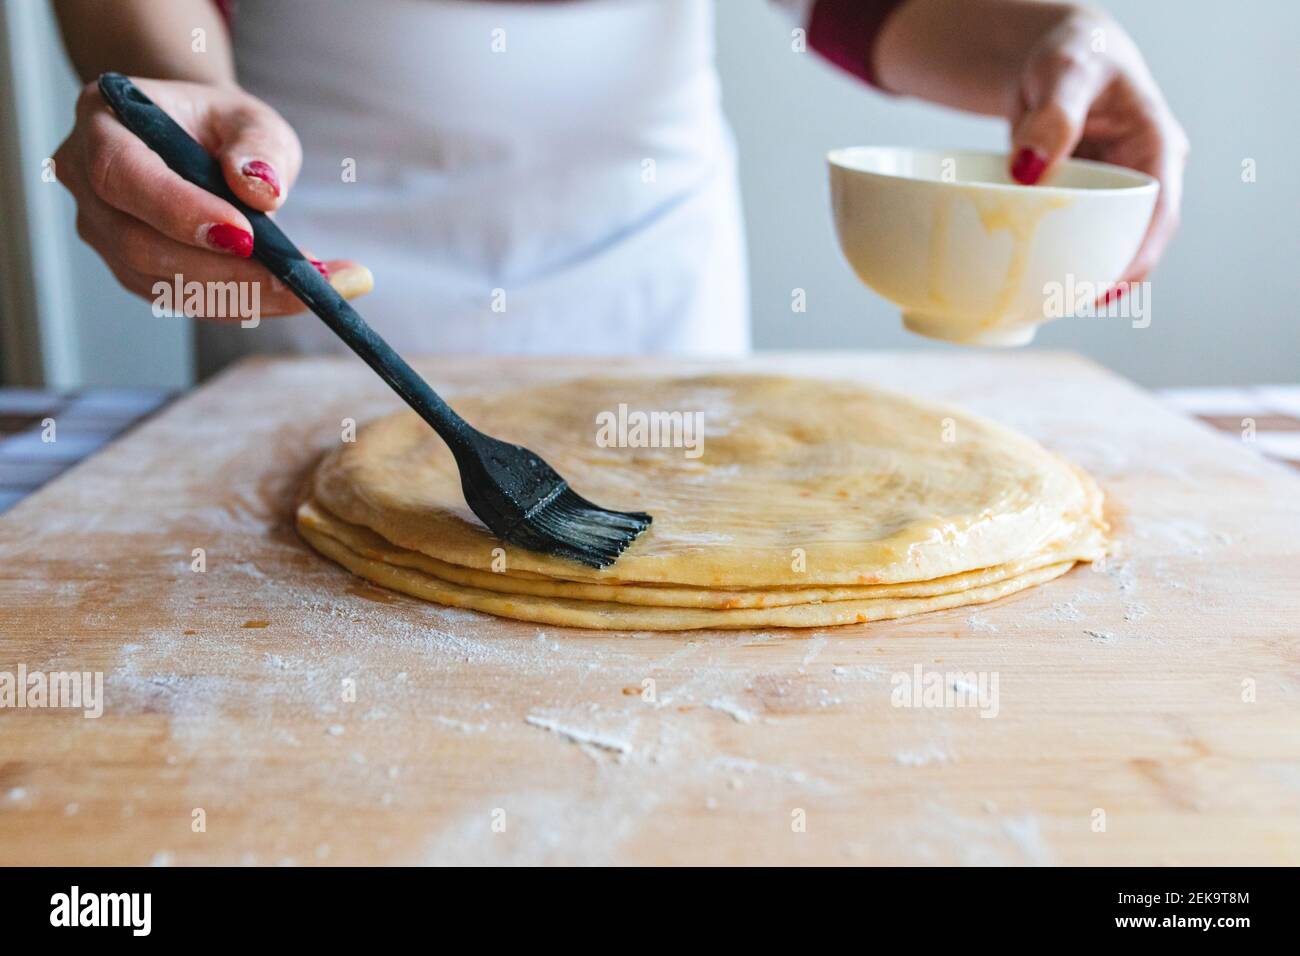 https://c8.alamy.com/comp/2EK9T8M/woman-applying-egg-on-dough-with-basting-brush-to-make-croissants-in-kitchen-2EK9T8M.jpg